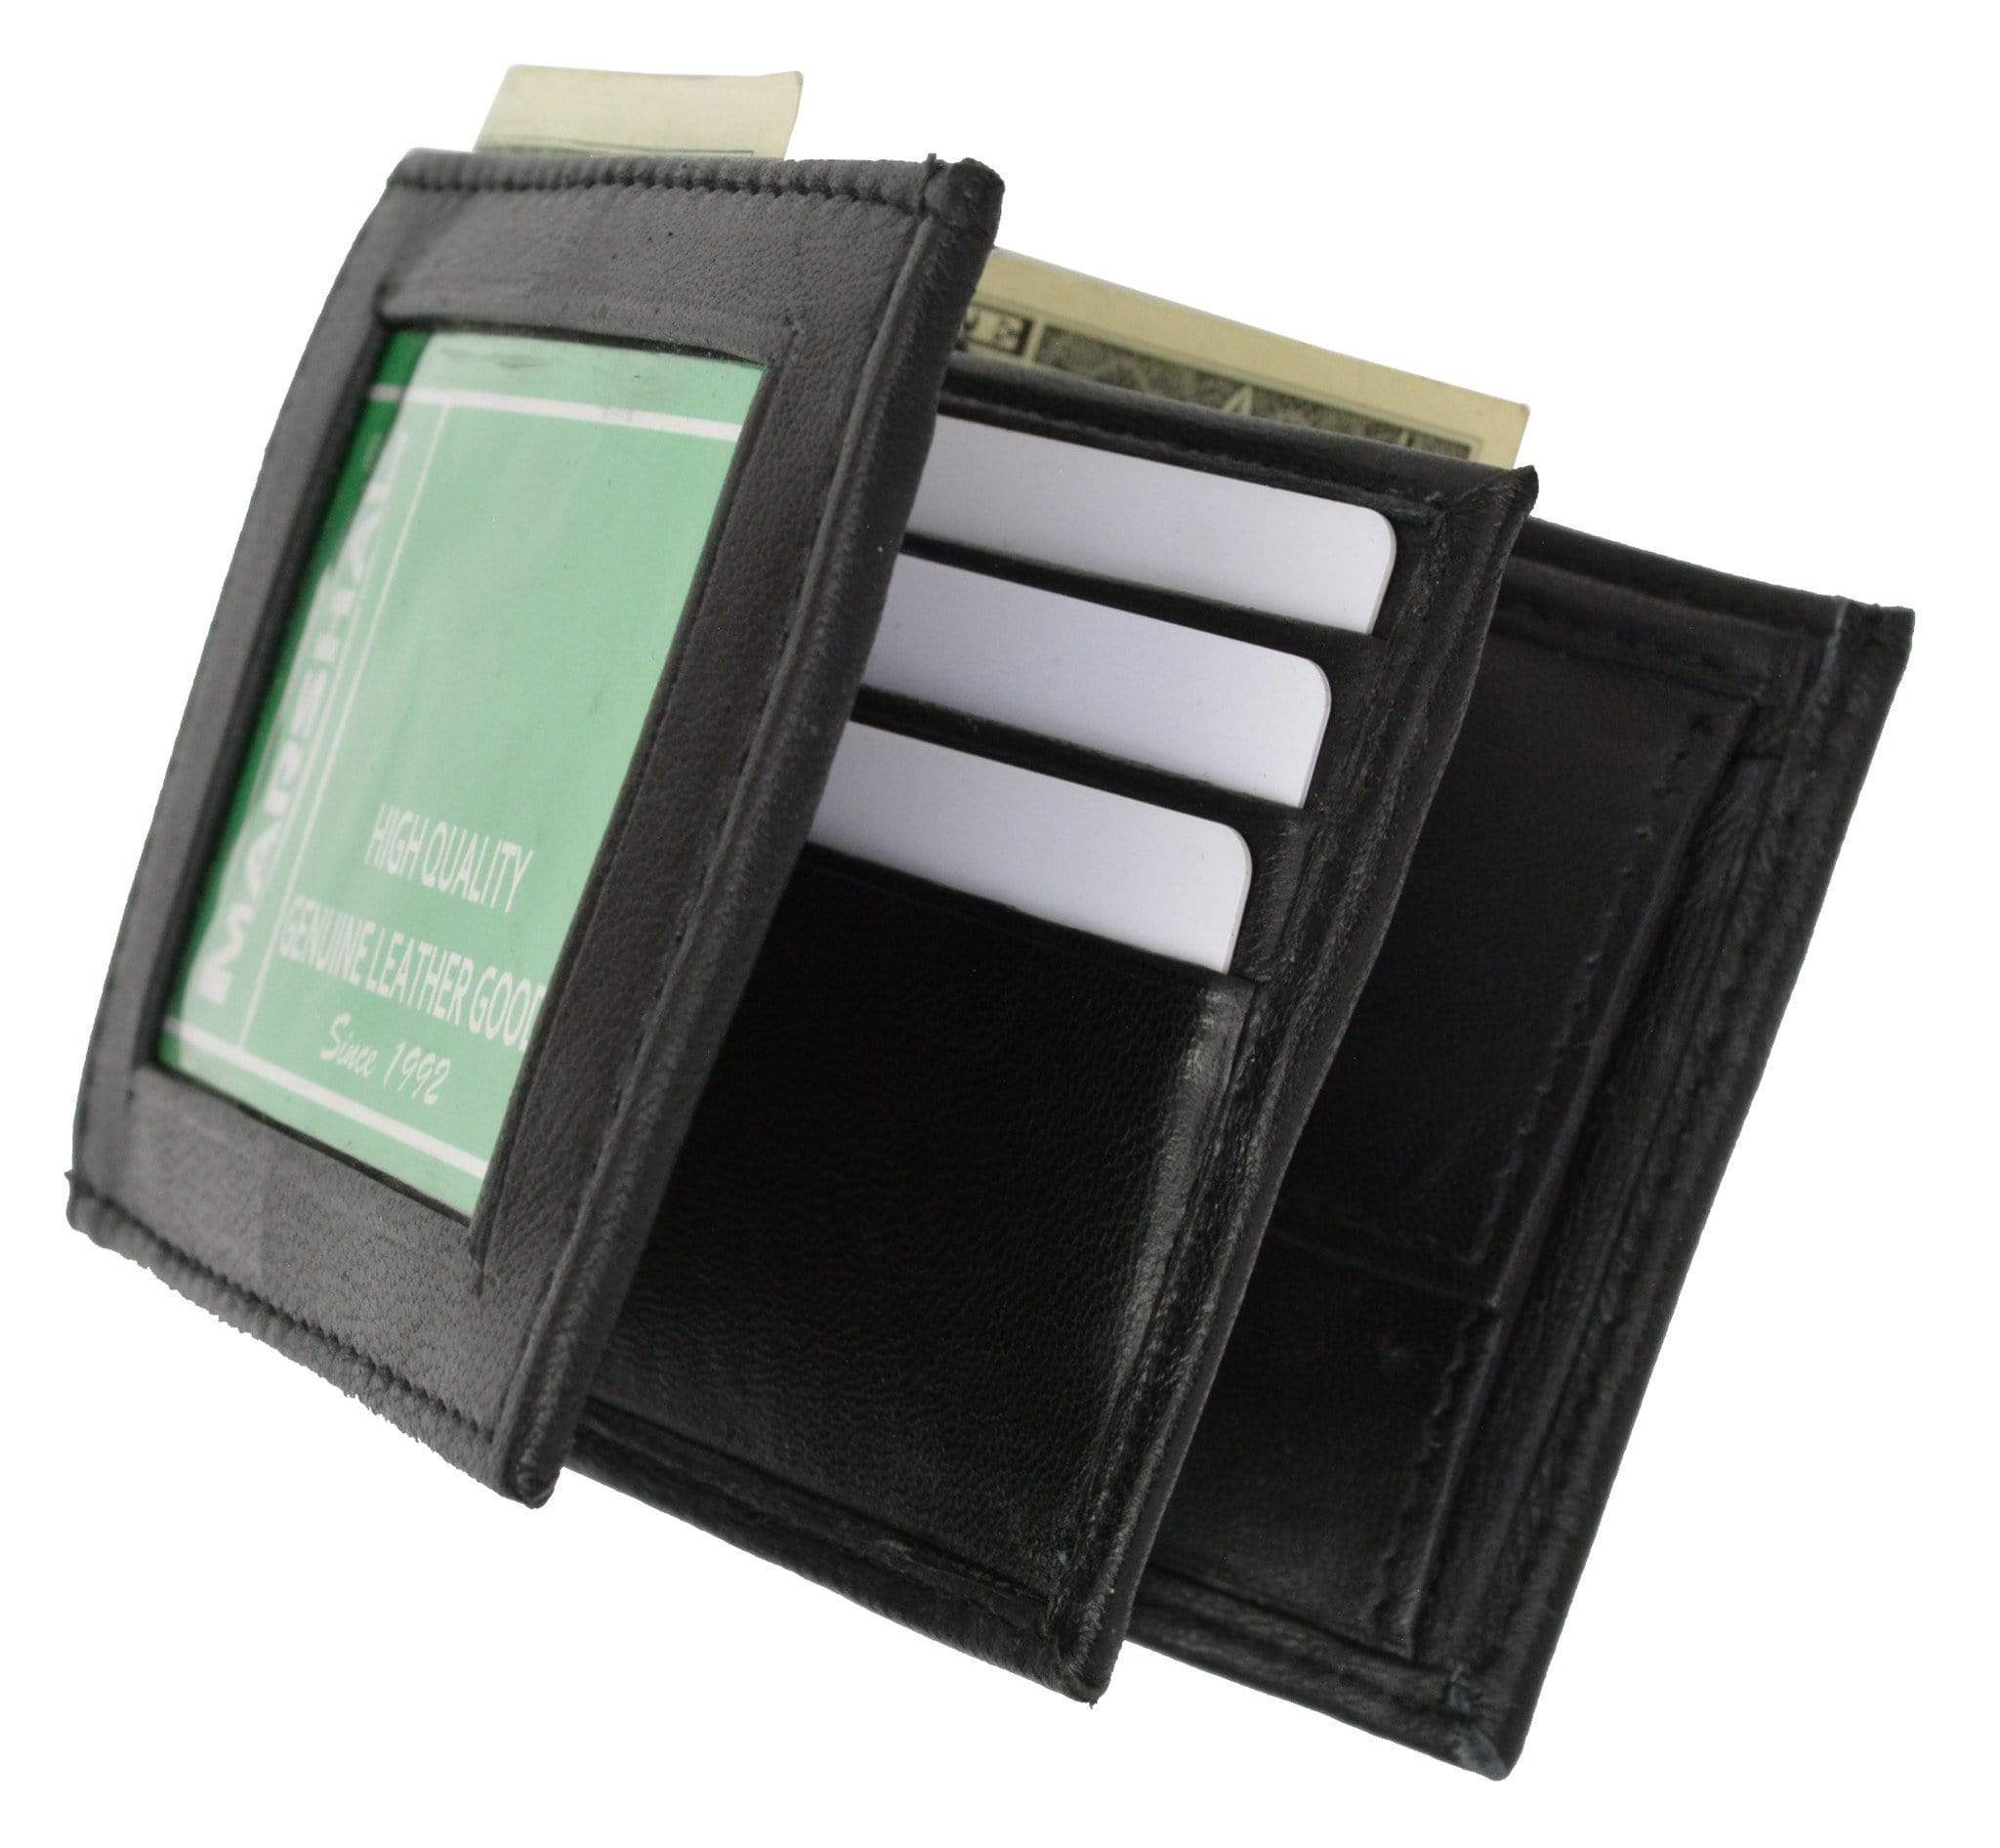 Premium Classic Intrecciato Bi-fold Men Wallet – Yard of Deals